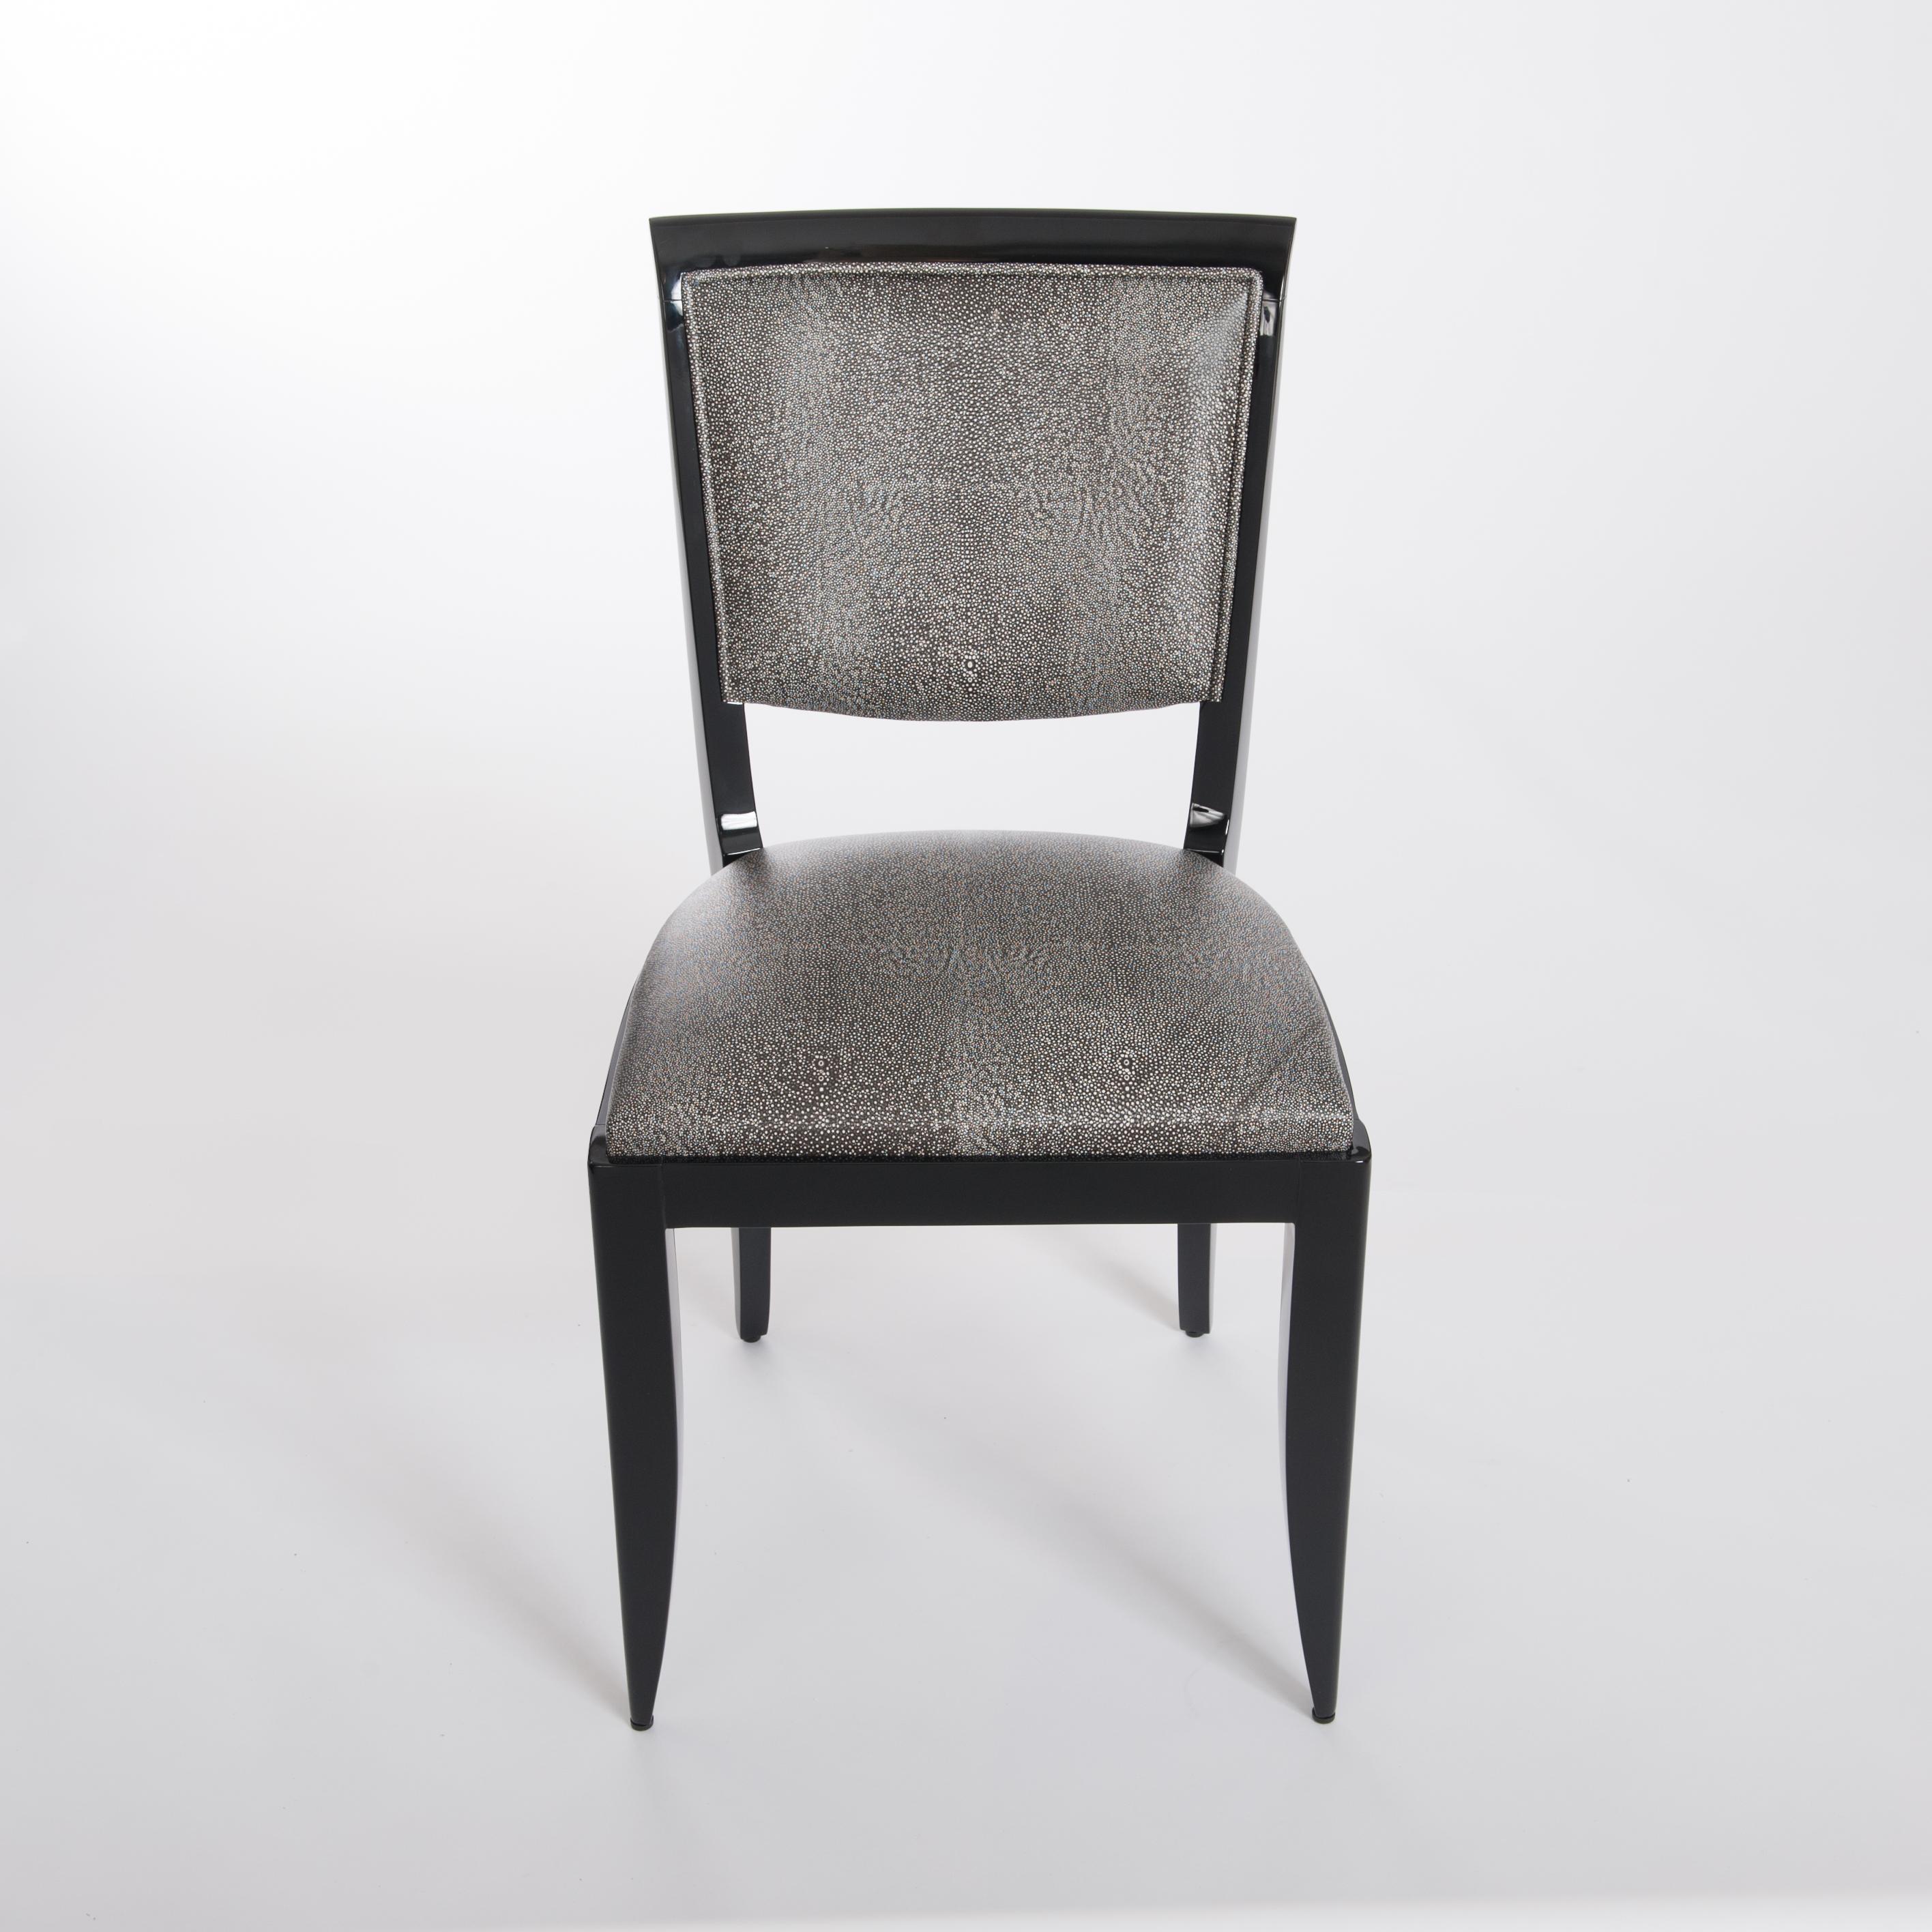 Satz von sechs eleganten und bequemen französischen Art Deco Esszimmerstühlen, neu lackiertes Holzgestell mit schwarzem Glanz und komplett neu gepolstert mit schwarzem und weißem Leder im Raydesign.
Die Stühle sind zierlich-leichtfüßig und haben